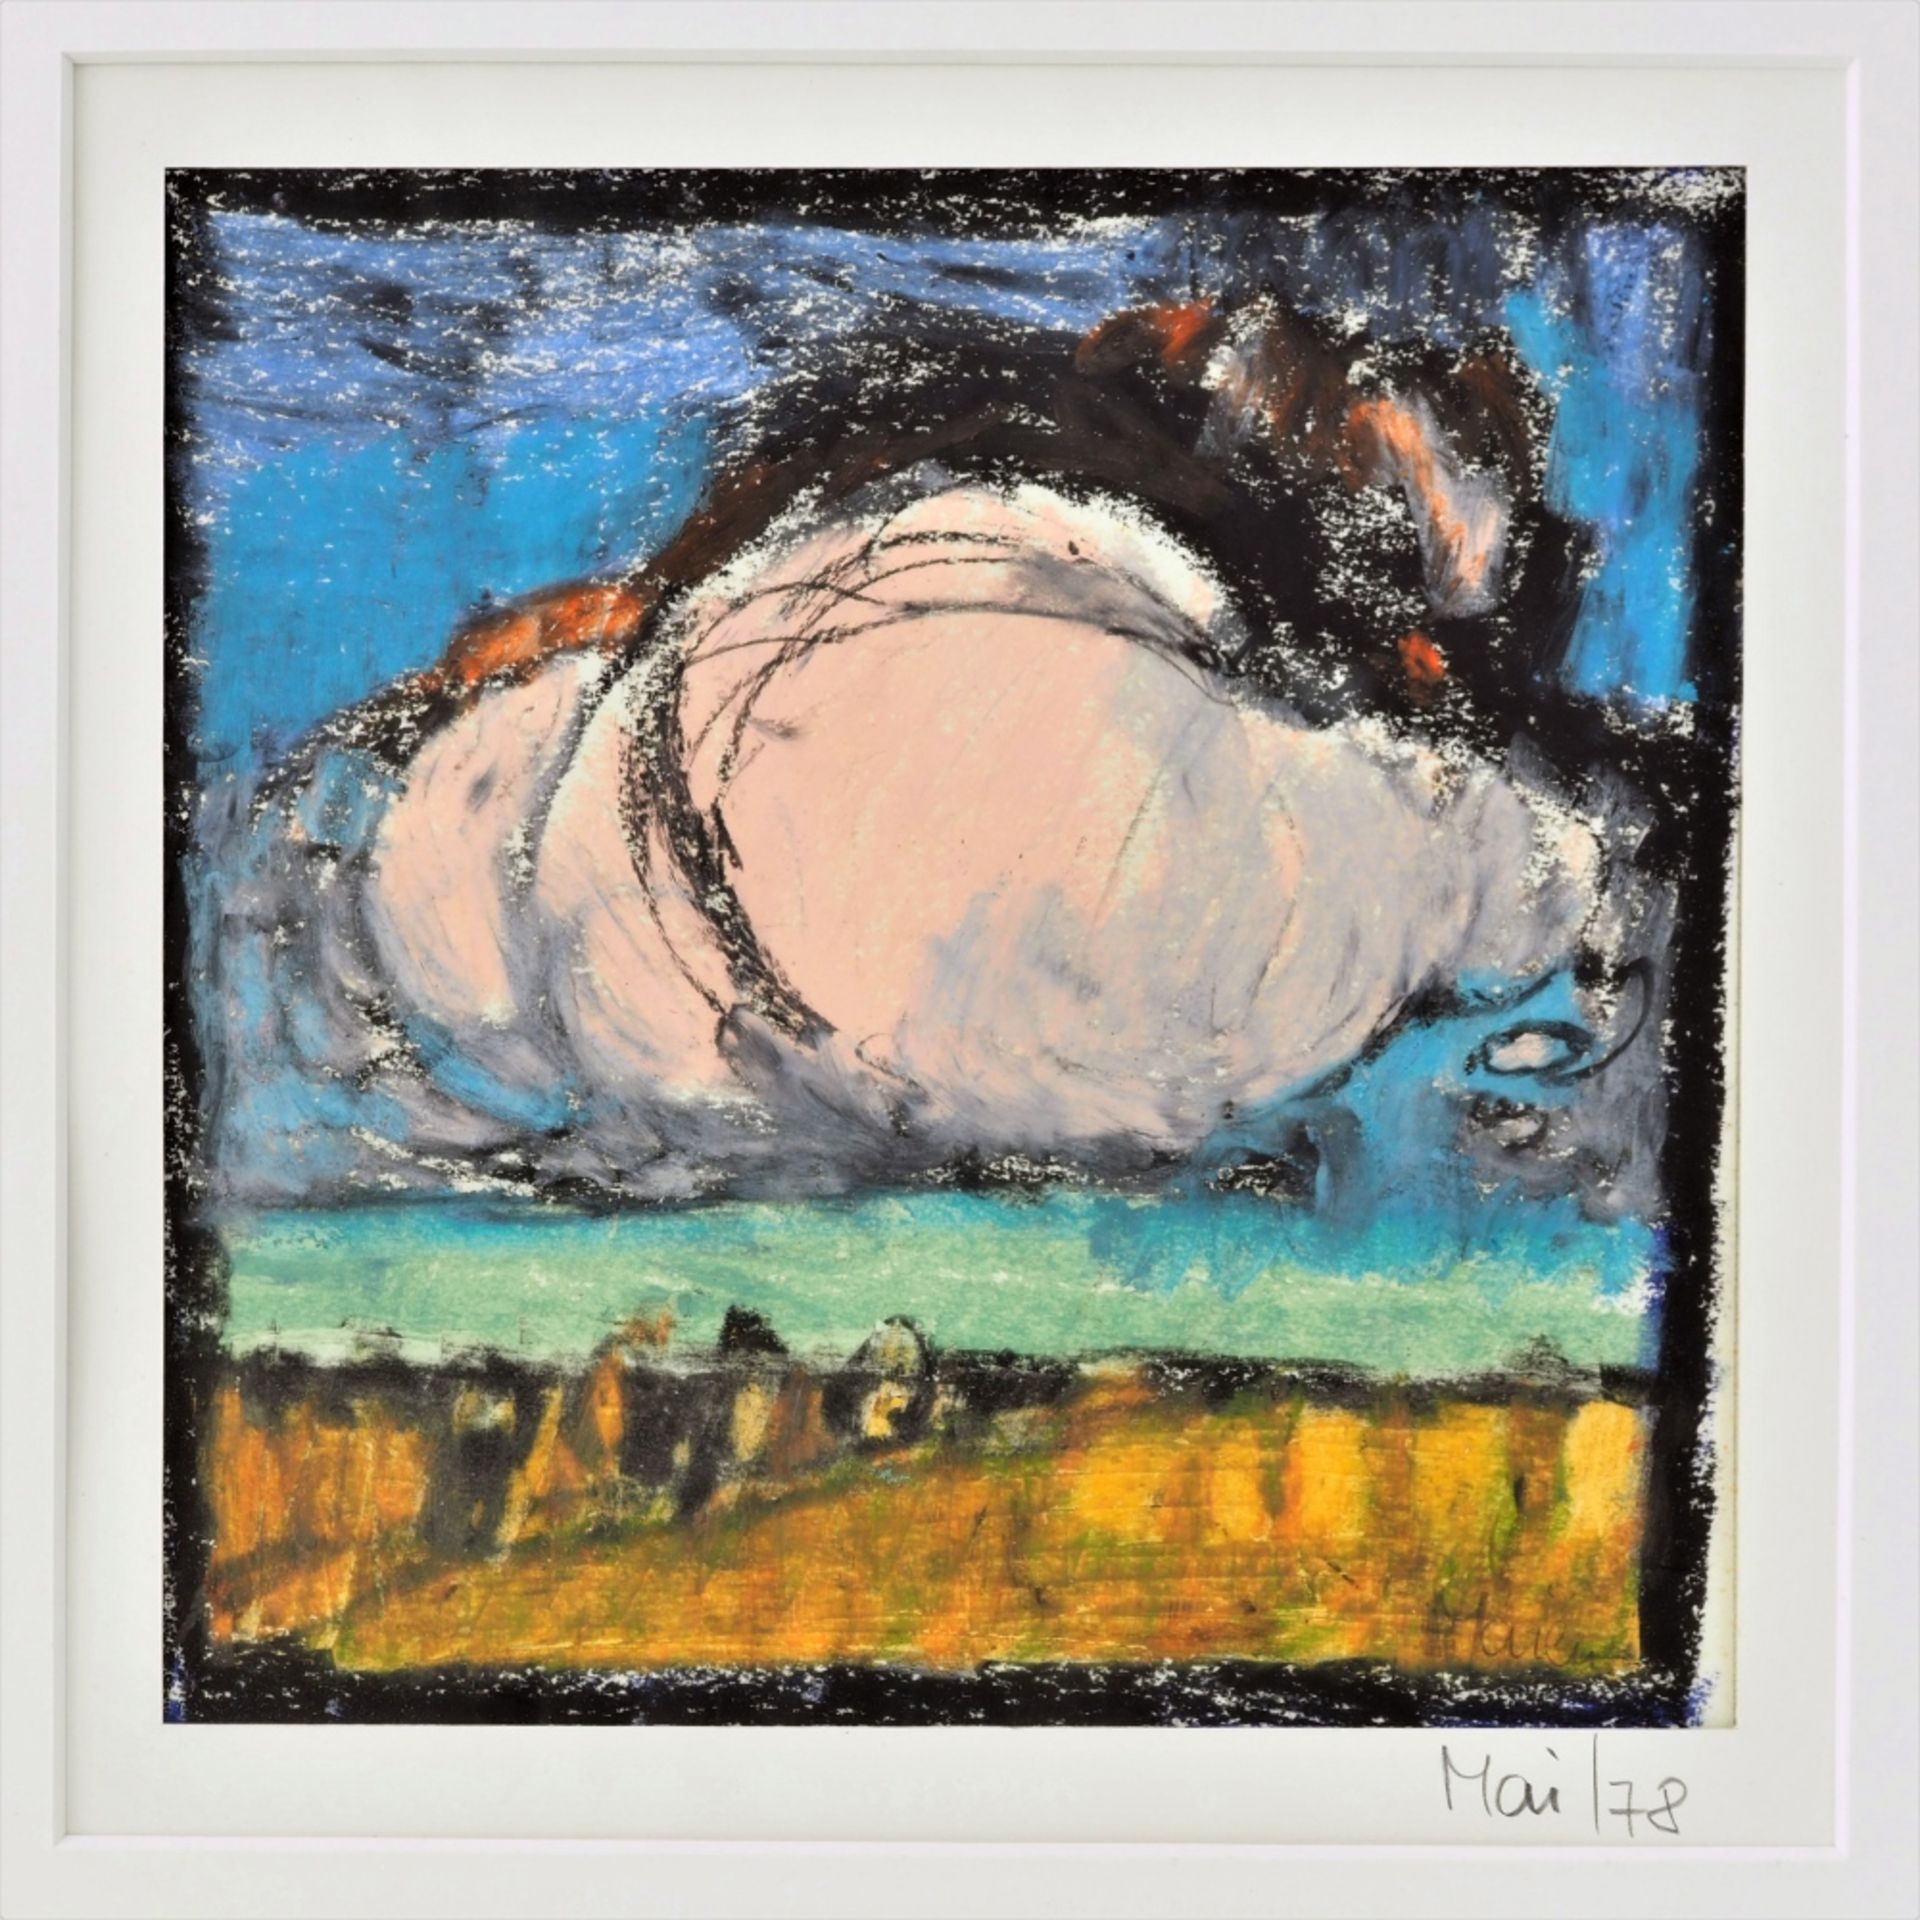 Peter Maien (1916, Stuttgart - 1989, Altheim) - "Wolken", 1978